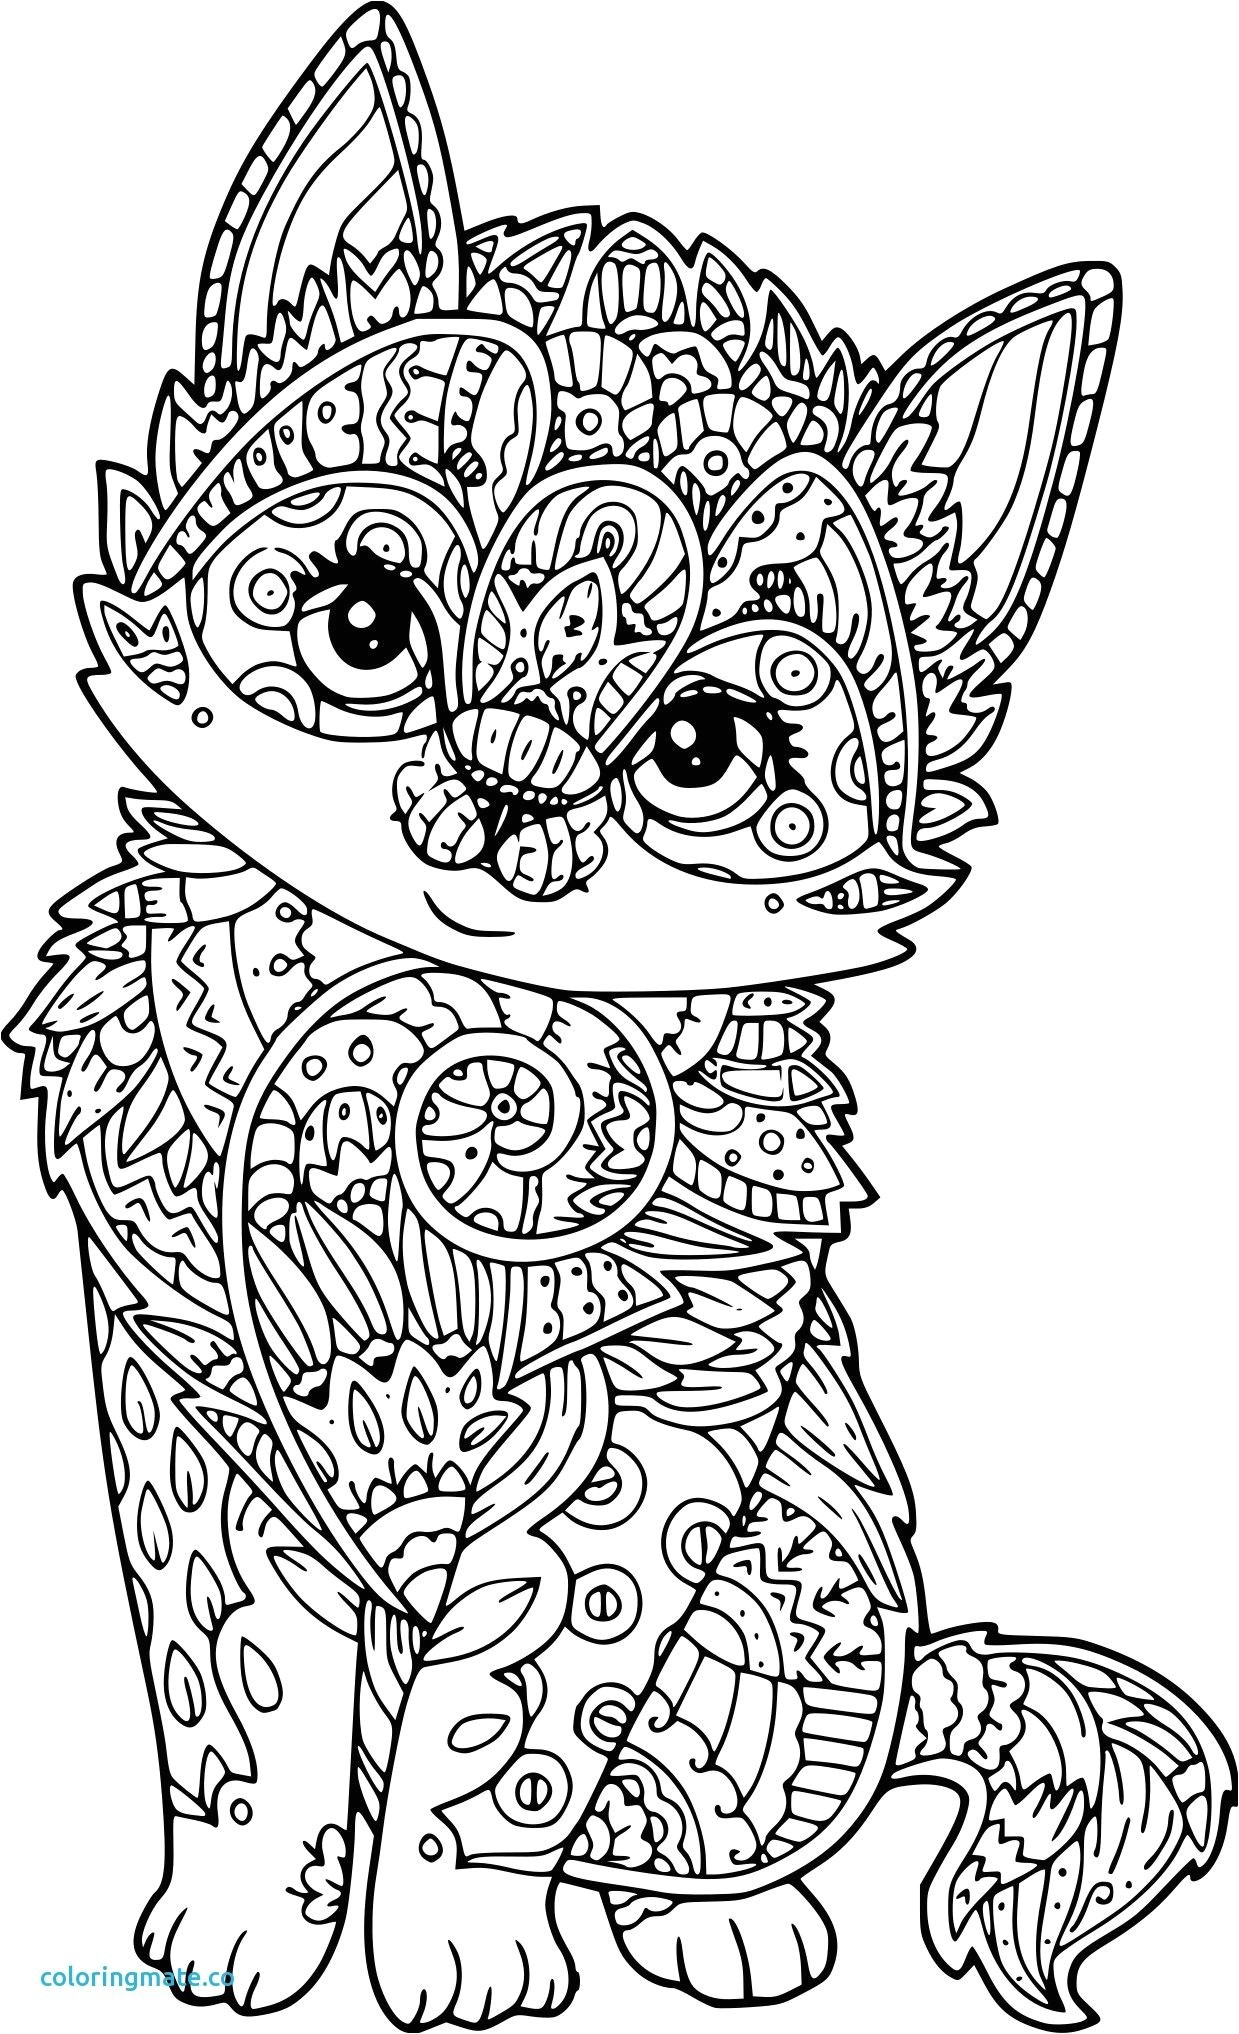 Coloriage mandala chat papillon fresh coloriage chat antistress a imprimer sur coloriages info Mandala de